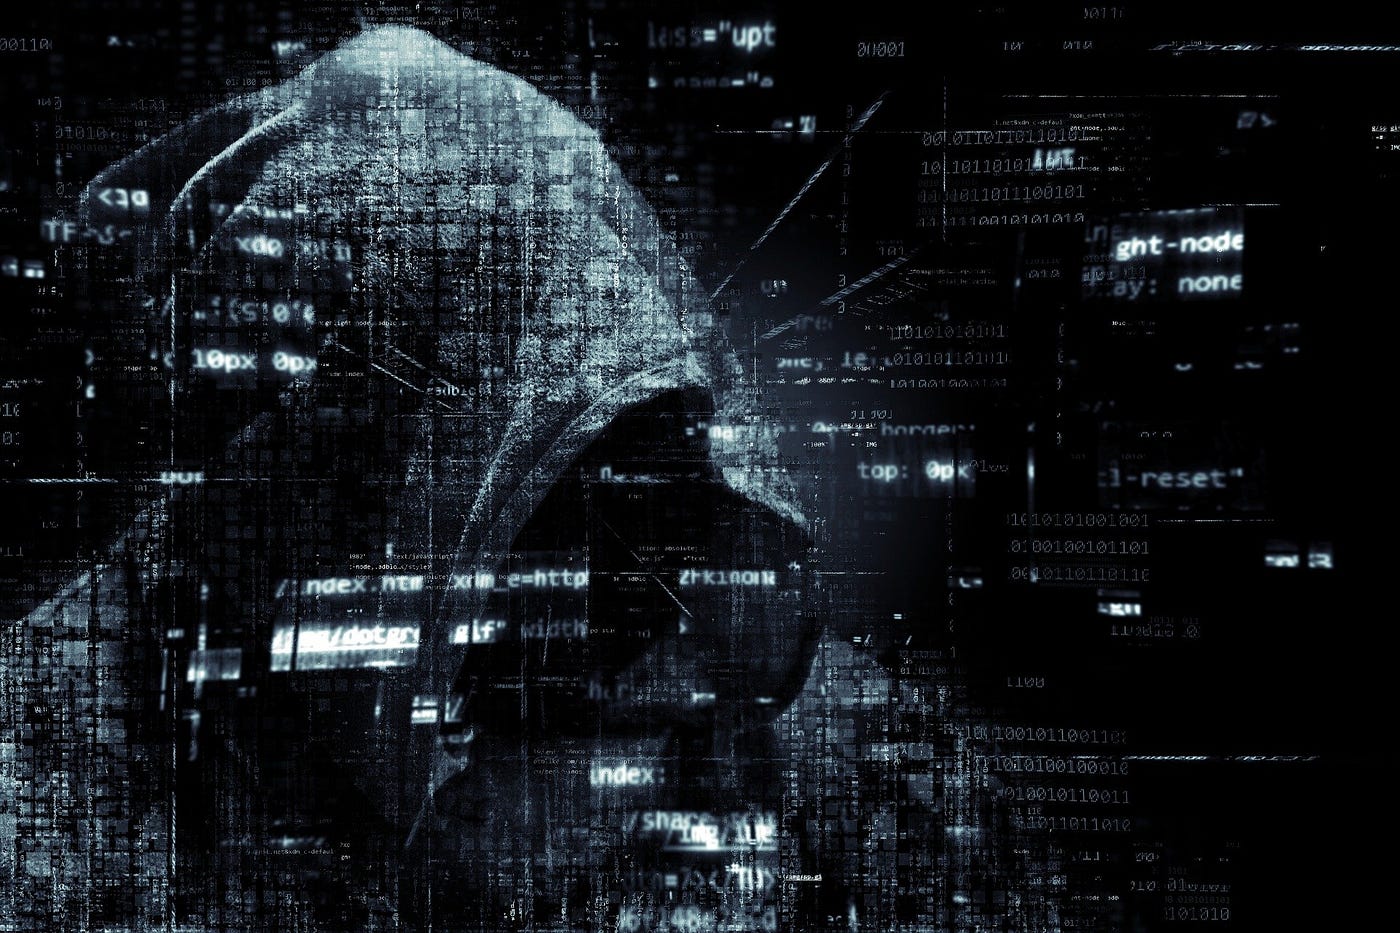 Cada hacker com o seu chapéu: o bom, o mau e o feio - Avira Blog